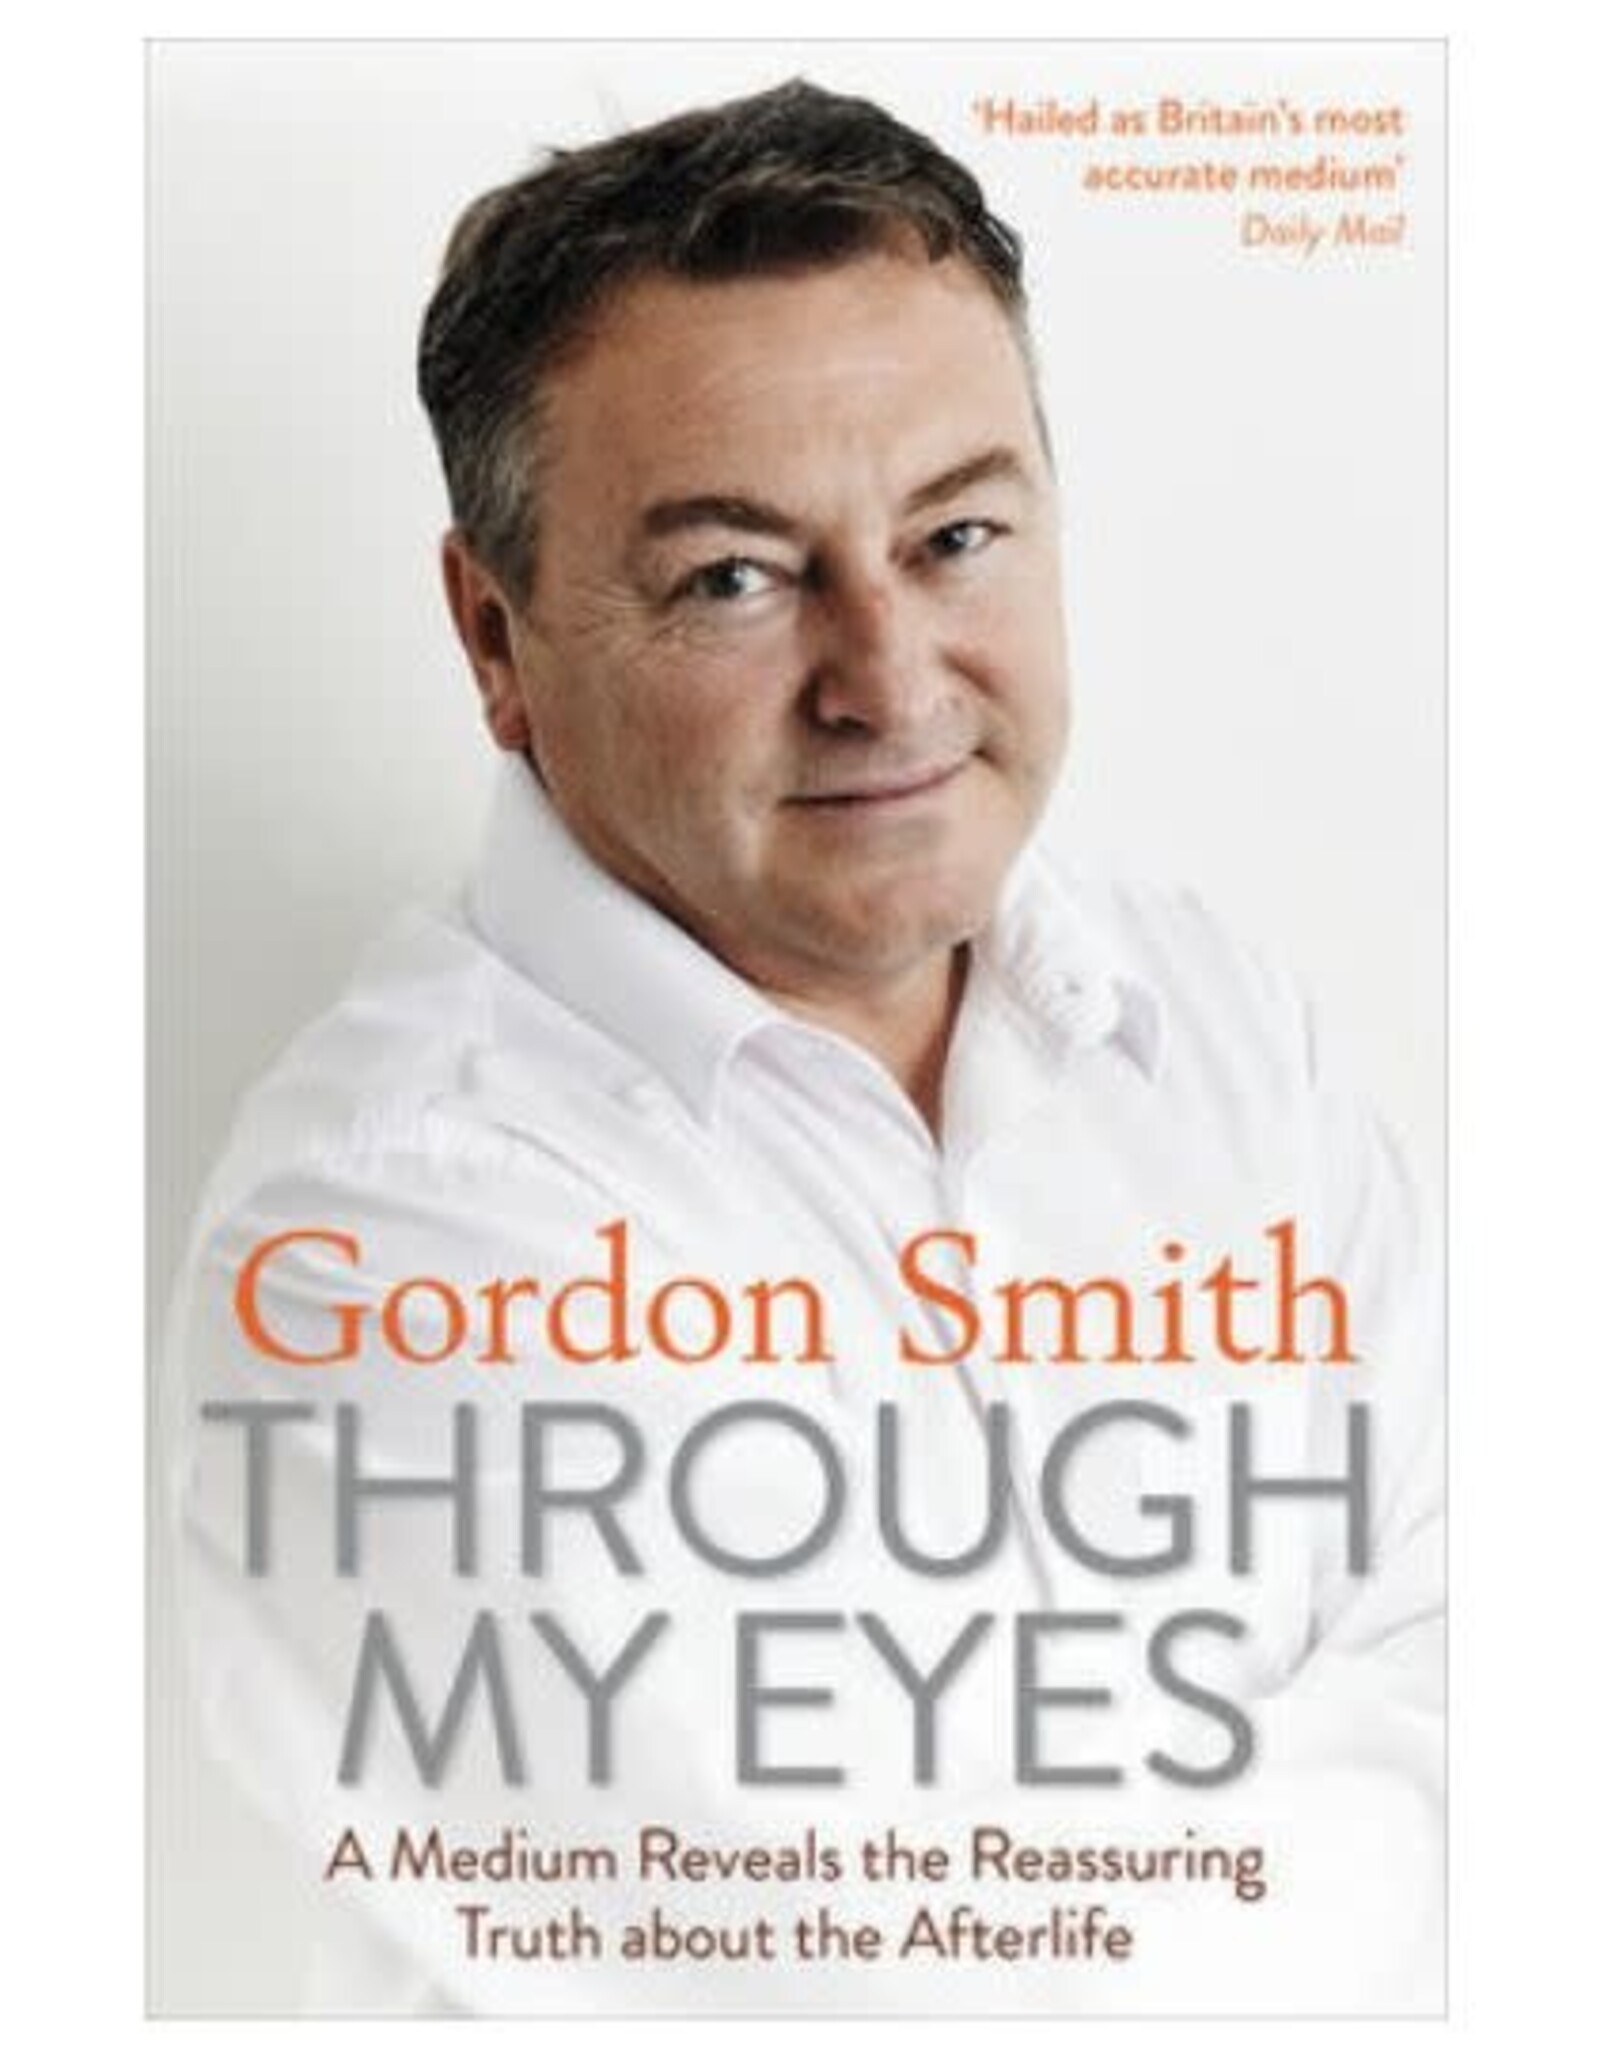 Gordon Smith Through My Eyes by Gordon Smith